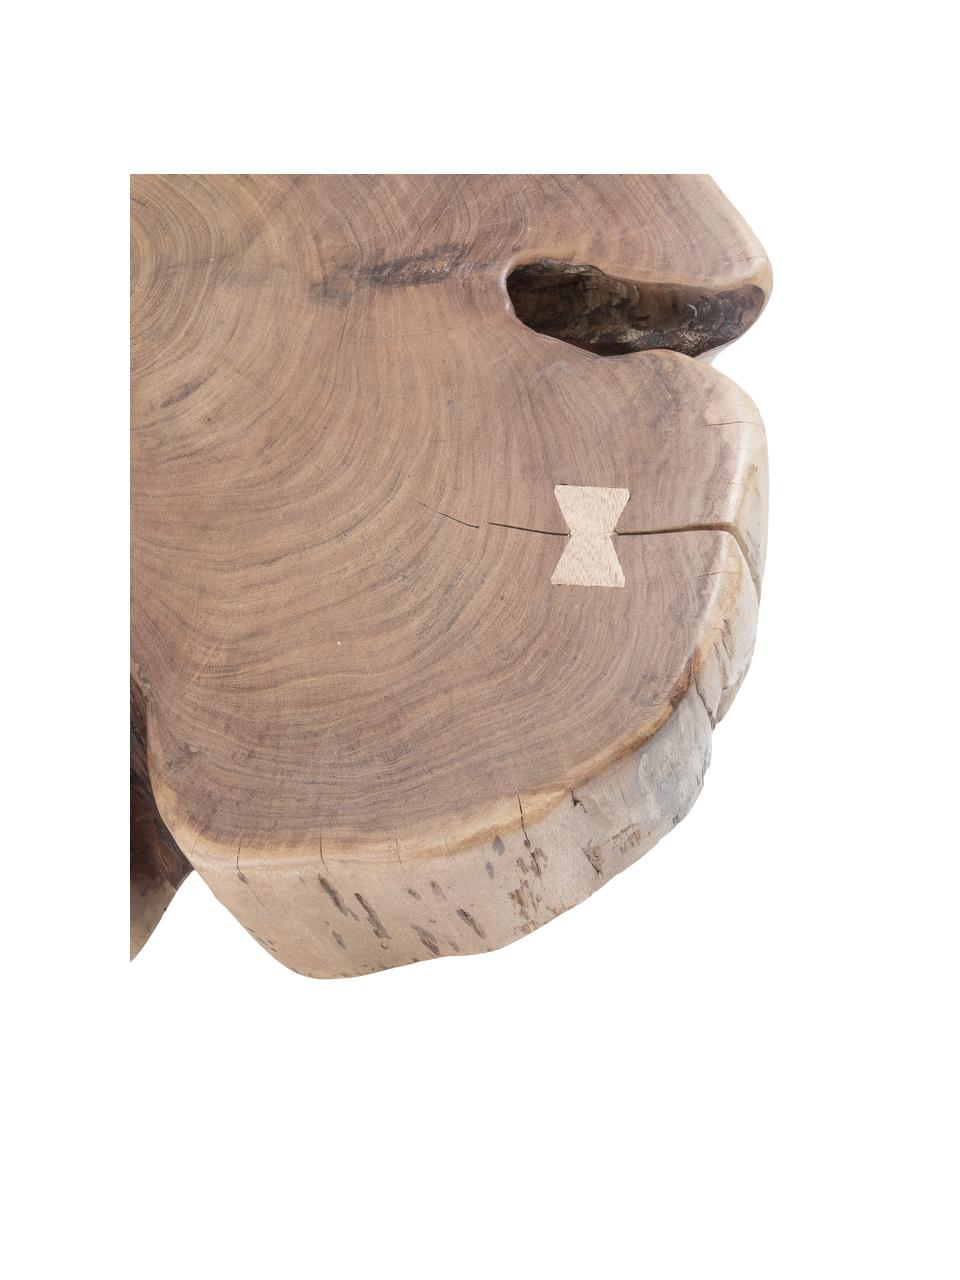 Massivholz-Couchtisch Essi mit Rollen, Tischplatte: Akazienholz, Rollen: Kunststoff, Braun, Ø 65 x H 23 cm